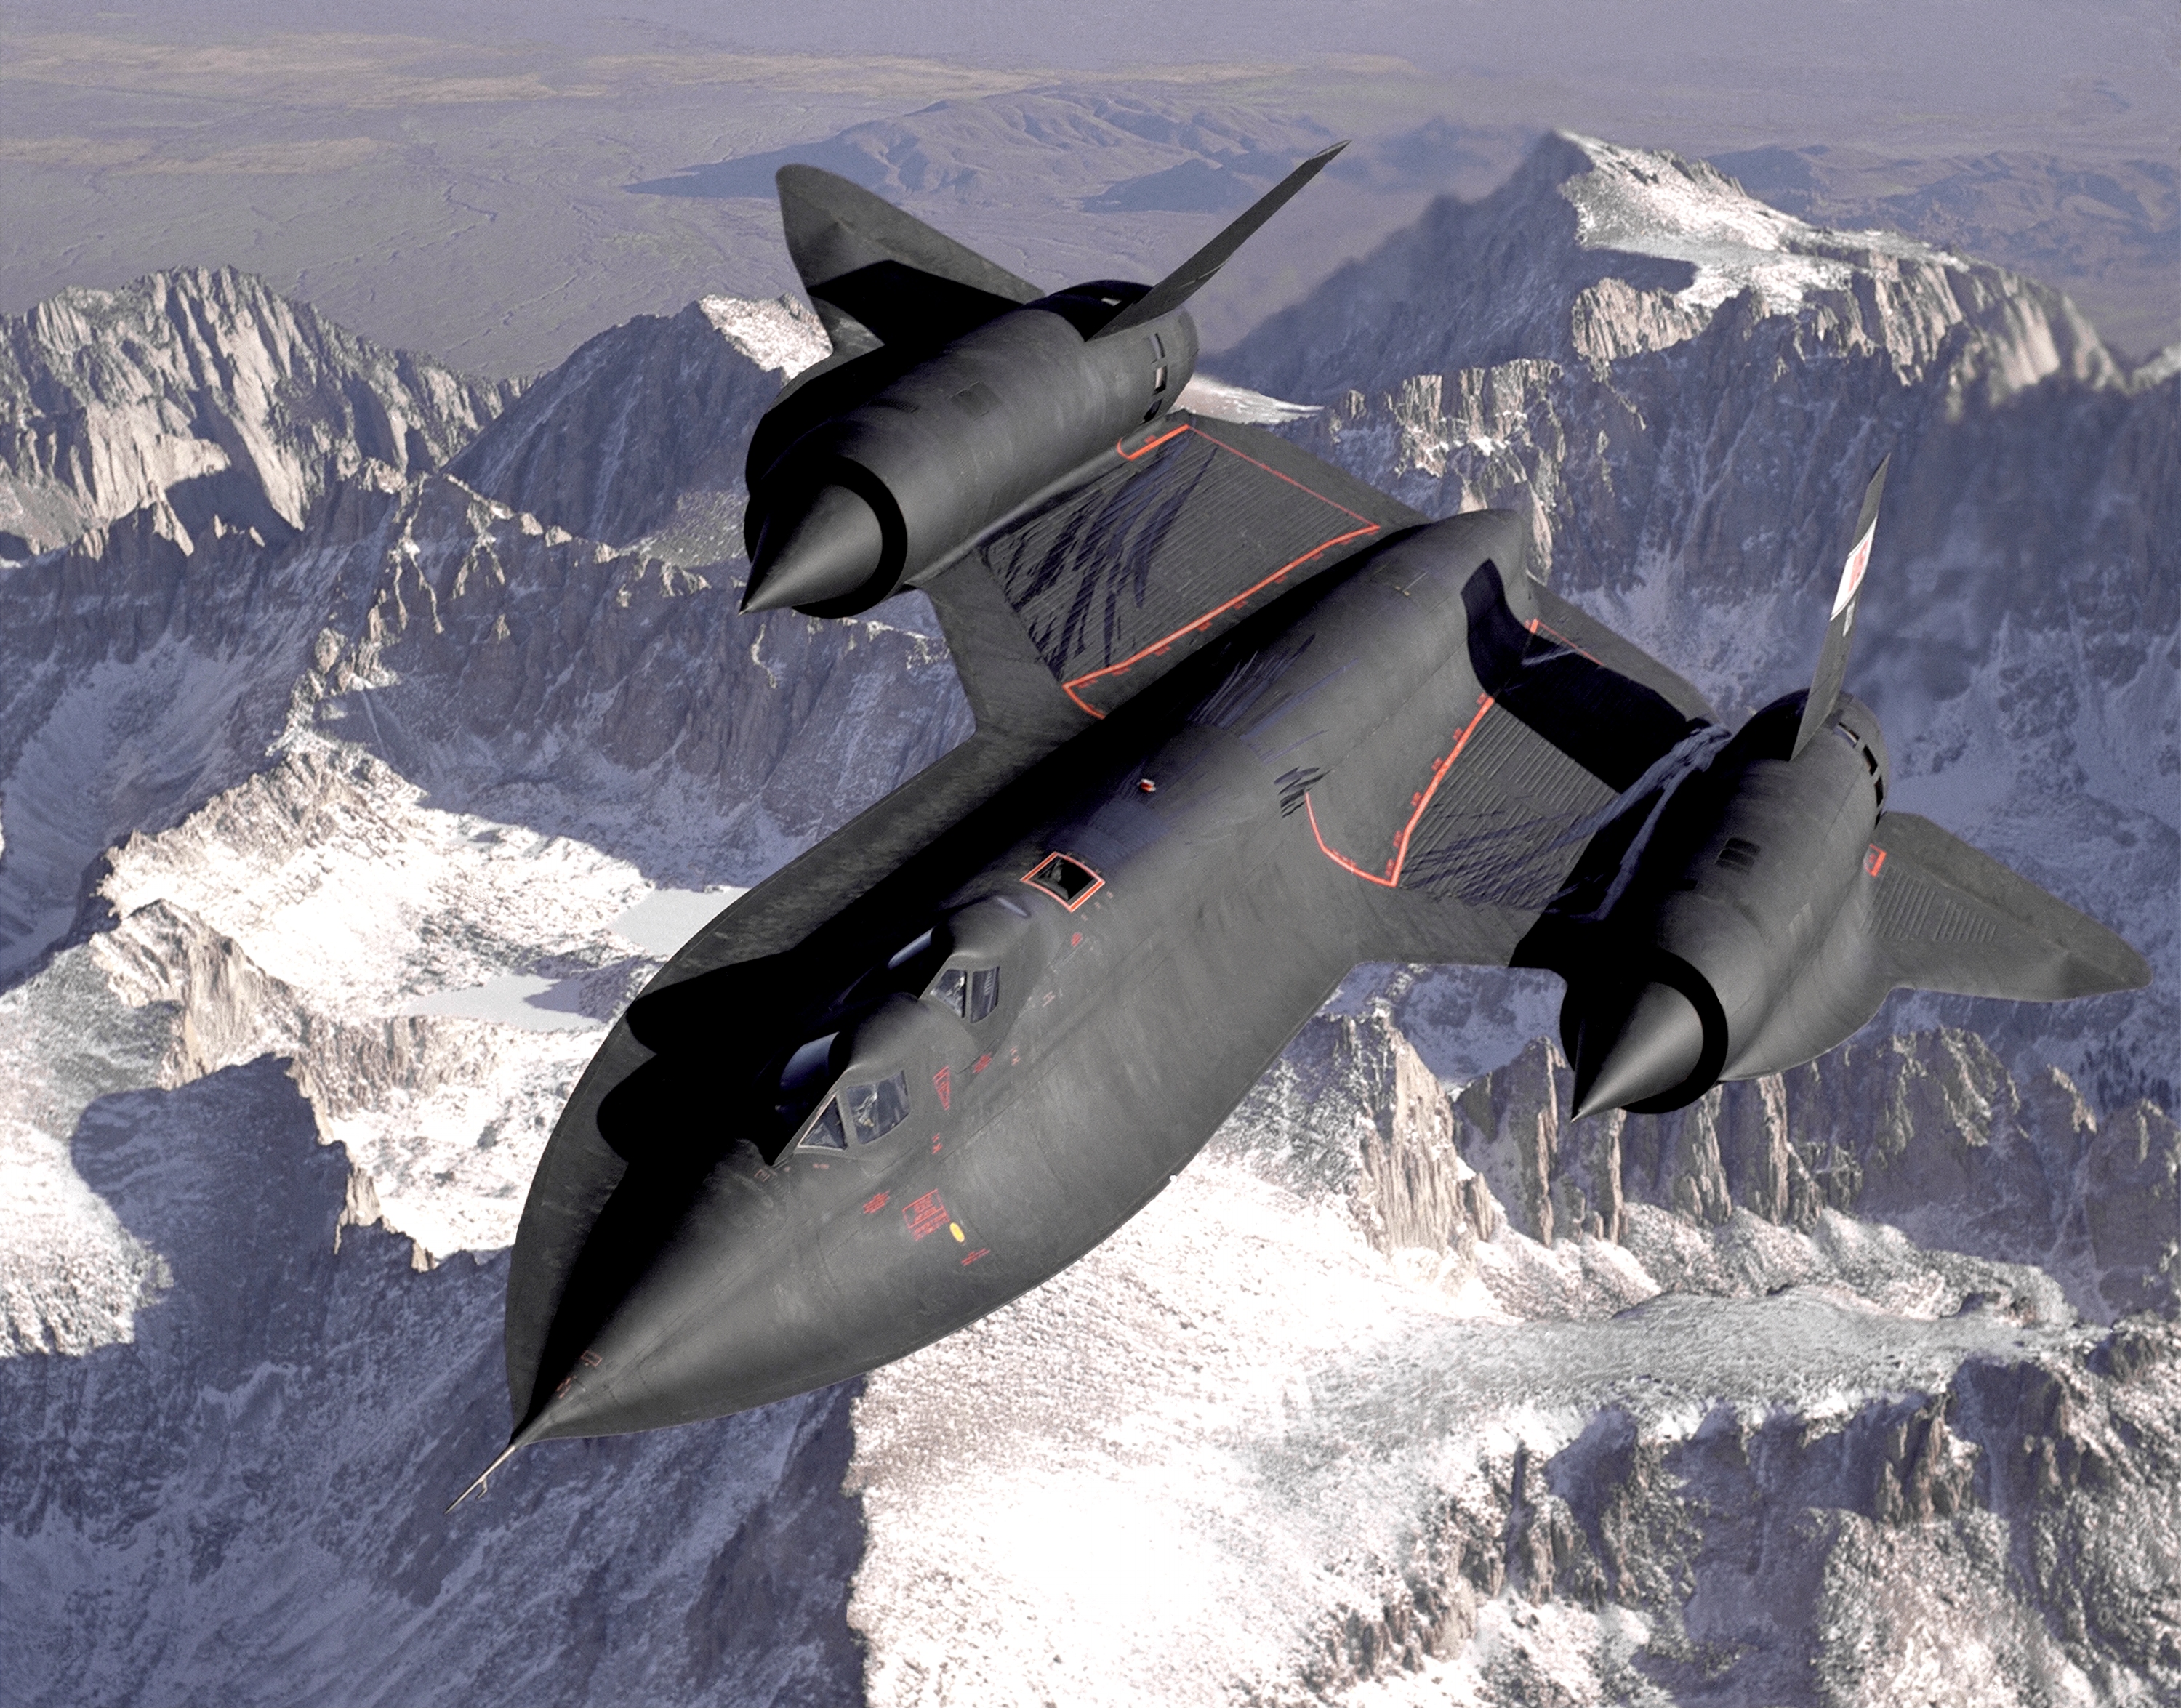 самолет, военный, Blackbird, самолеты, SR- 71 Blackbird, транспортные средства - обои на рабочий стол